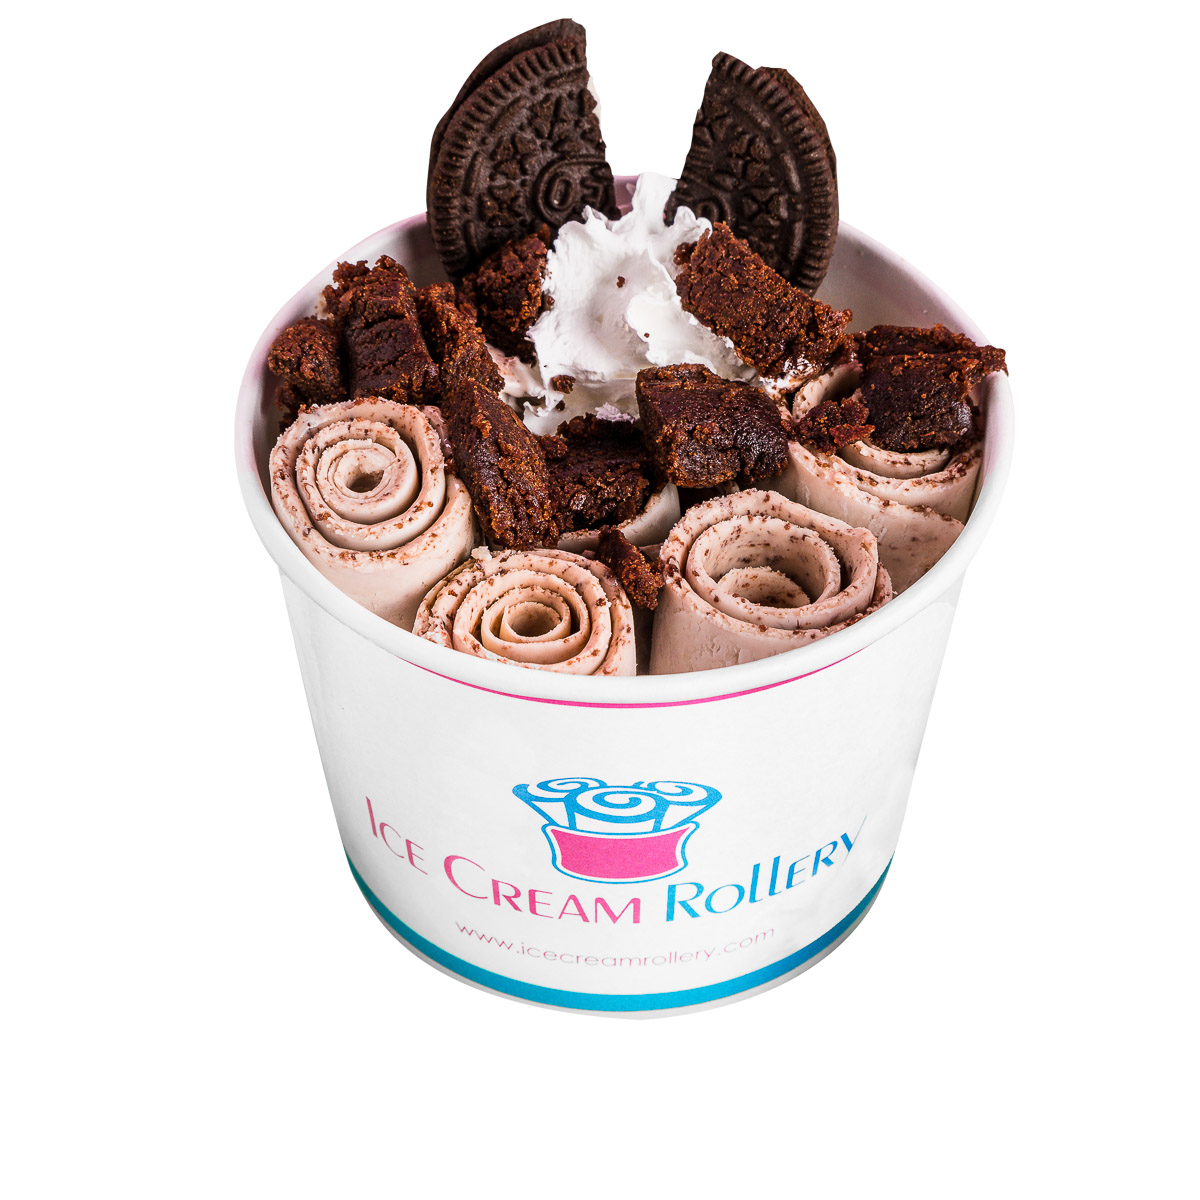 Order 8. Founders Favorite food online from Ice Cream Rollery store, Reynoldsburg on bringmethat.com